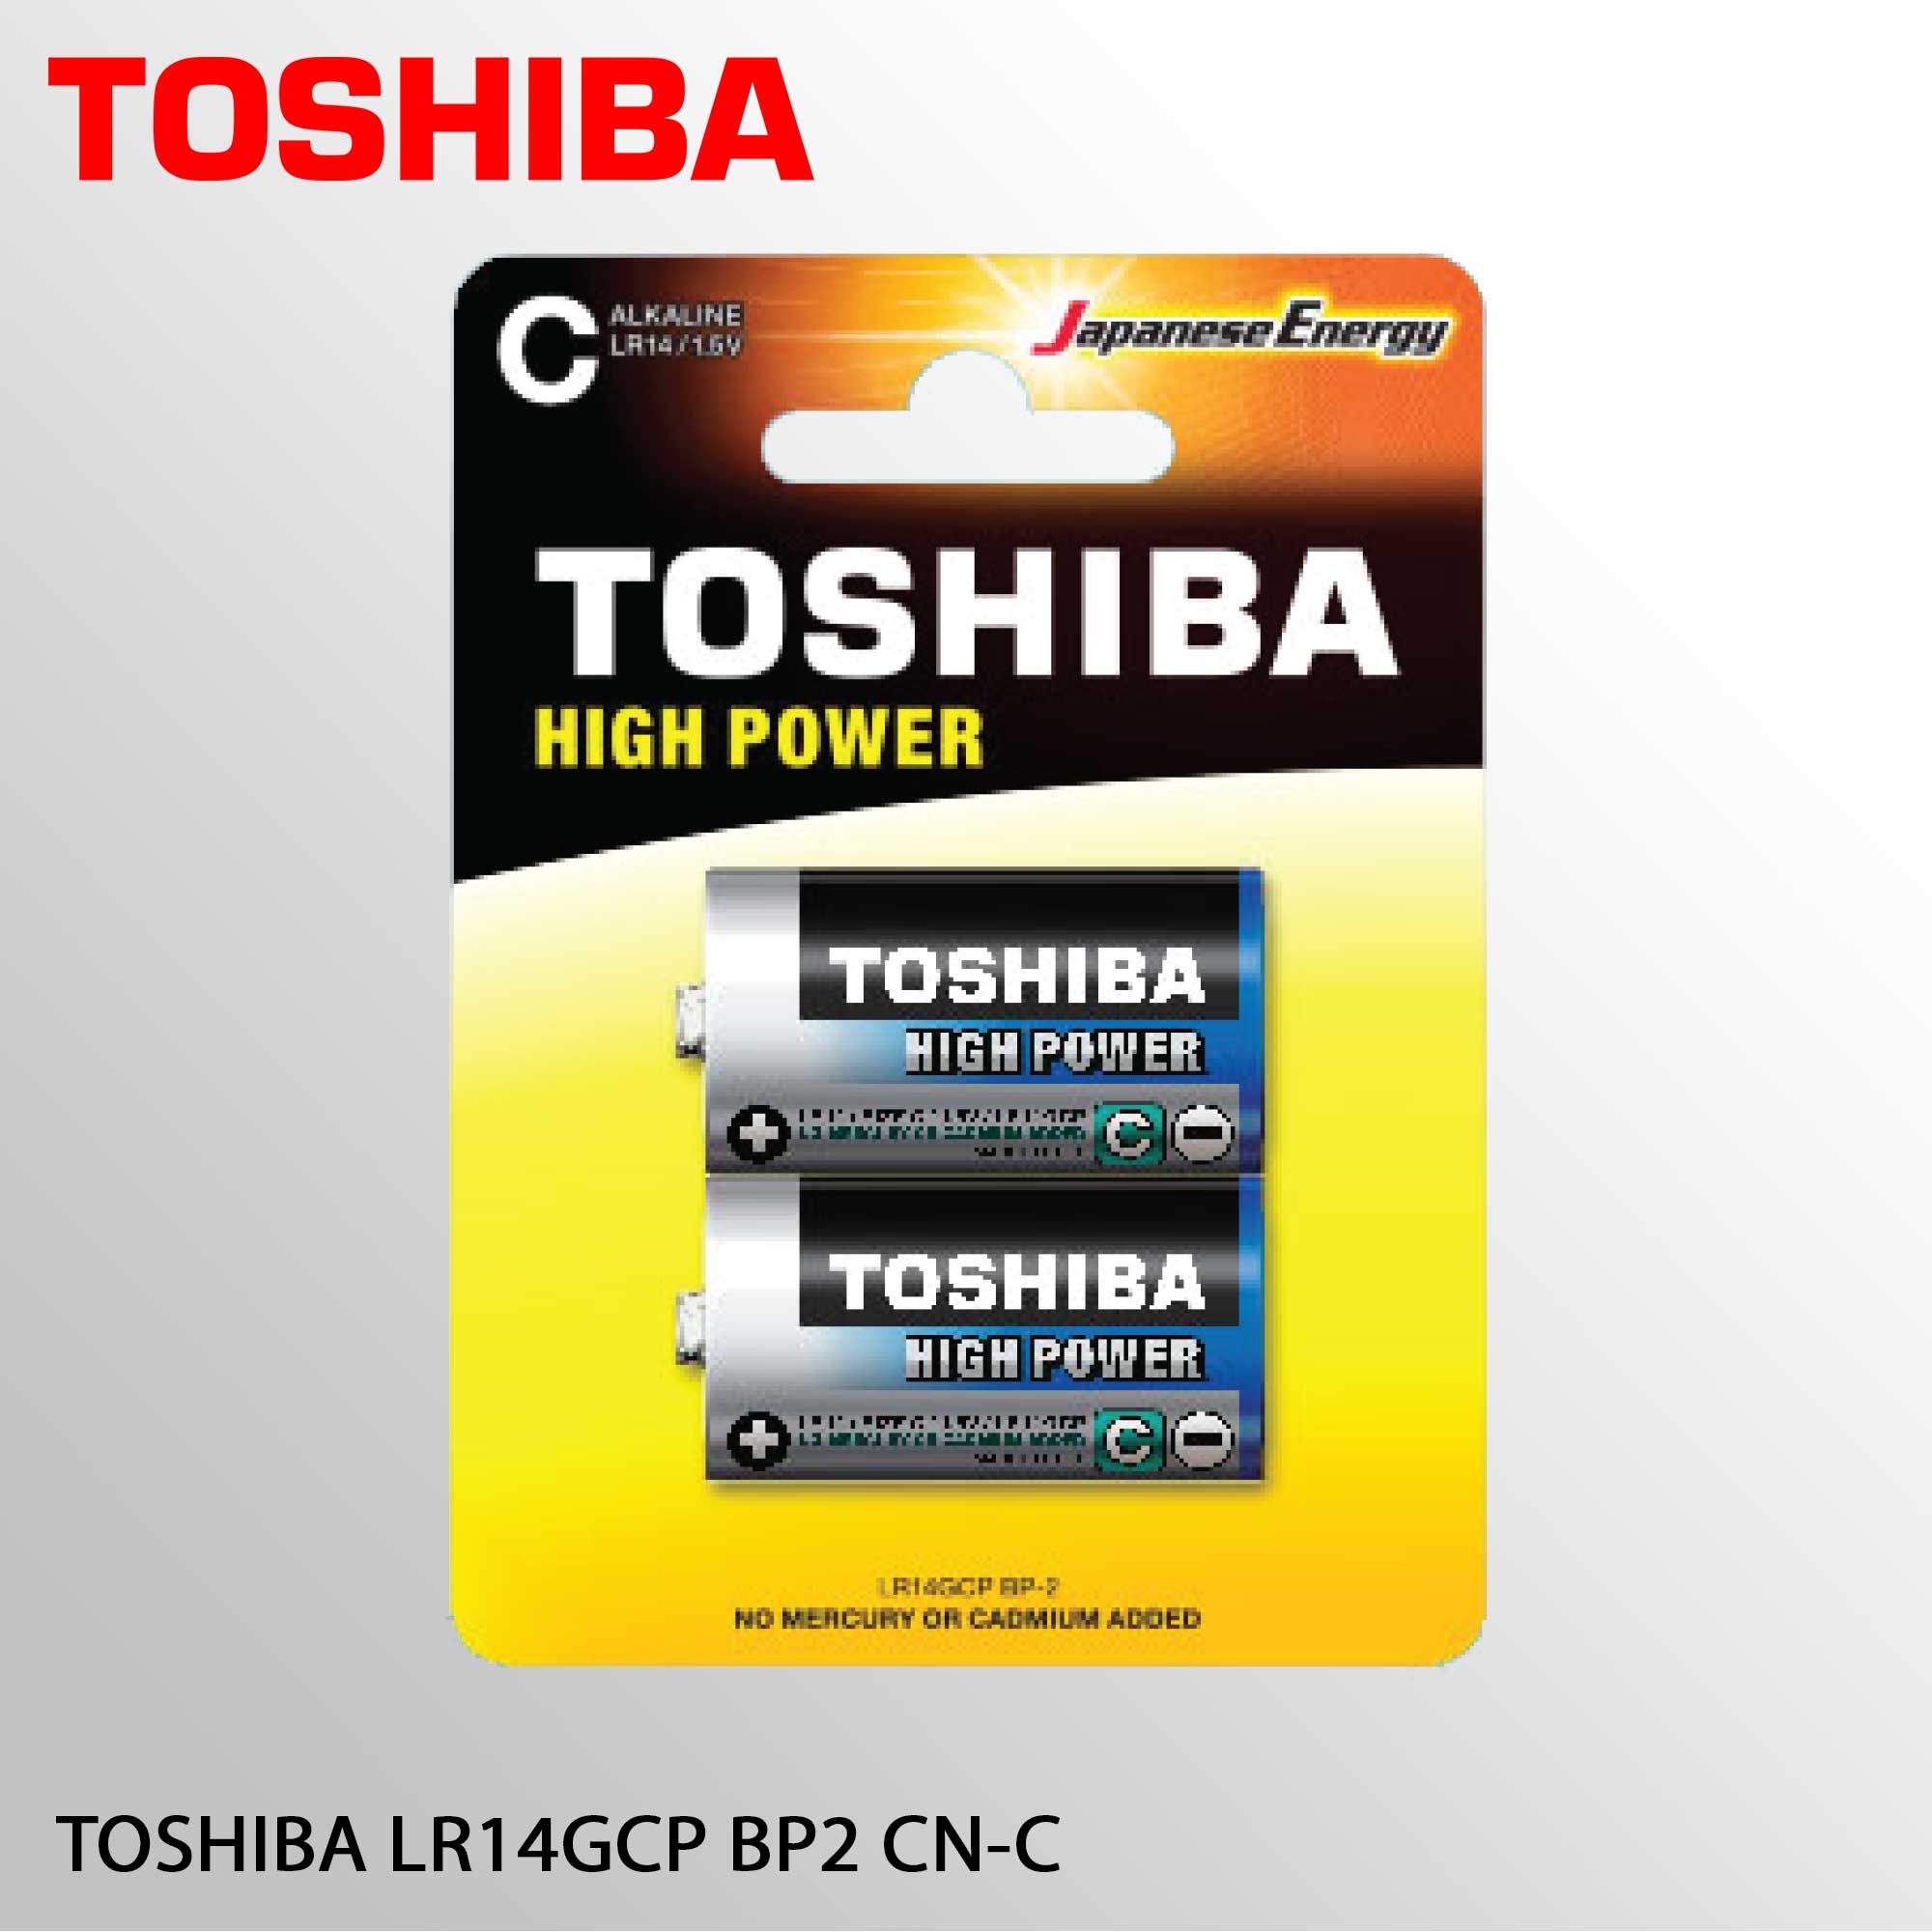 TOSHIBA LR14GCP BP2 CN-C